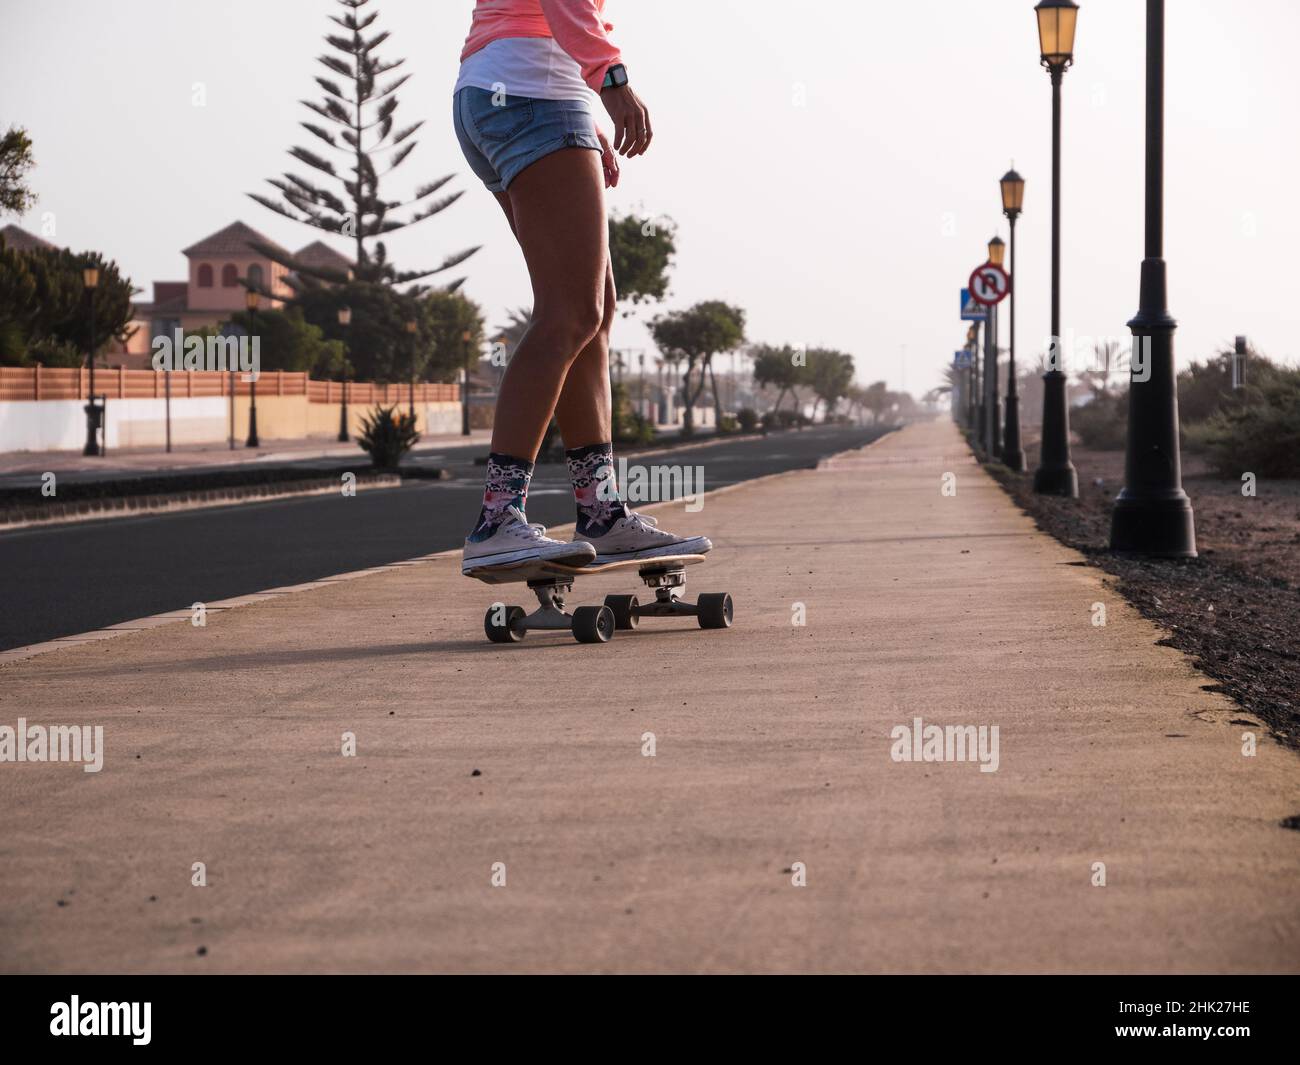 Unas piernas de mujer patinadora irreconocibles descendiendo en el skateboard de surfskate carver Foto de stock